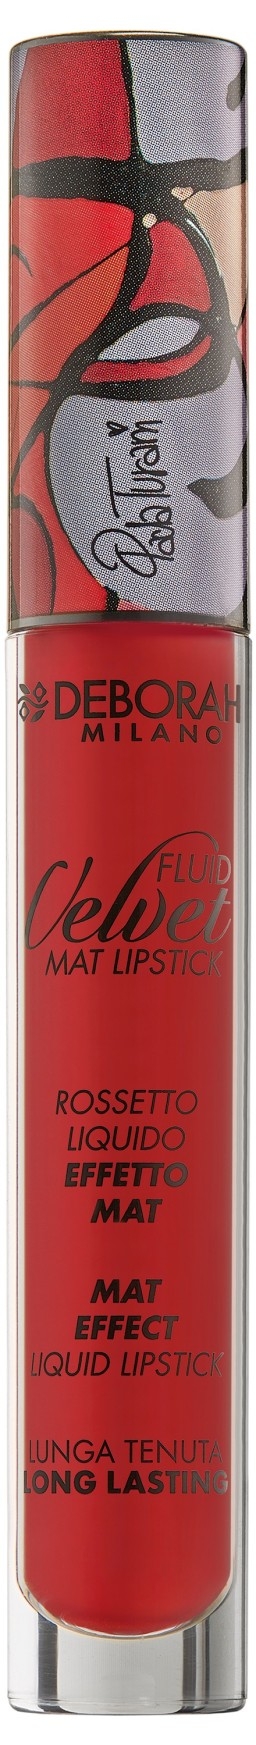 Deborah Milano Помада Fluid Velvet Mat Lipstick для Губ Матовая Жидкая тон 07 ltd Огненно-Красный, 4,5г